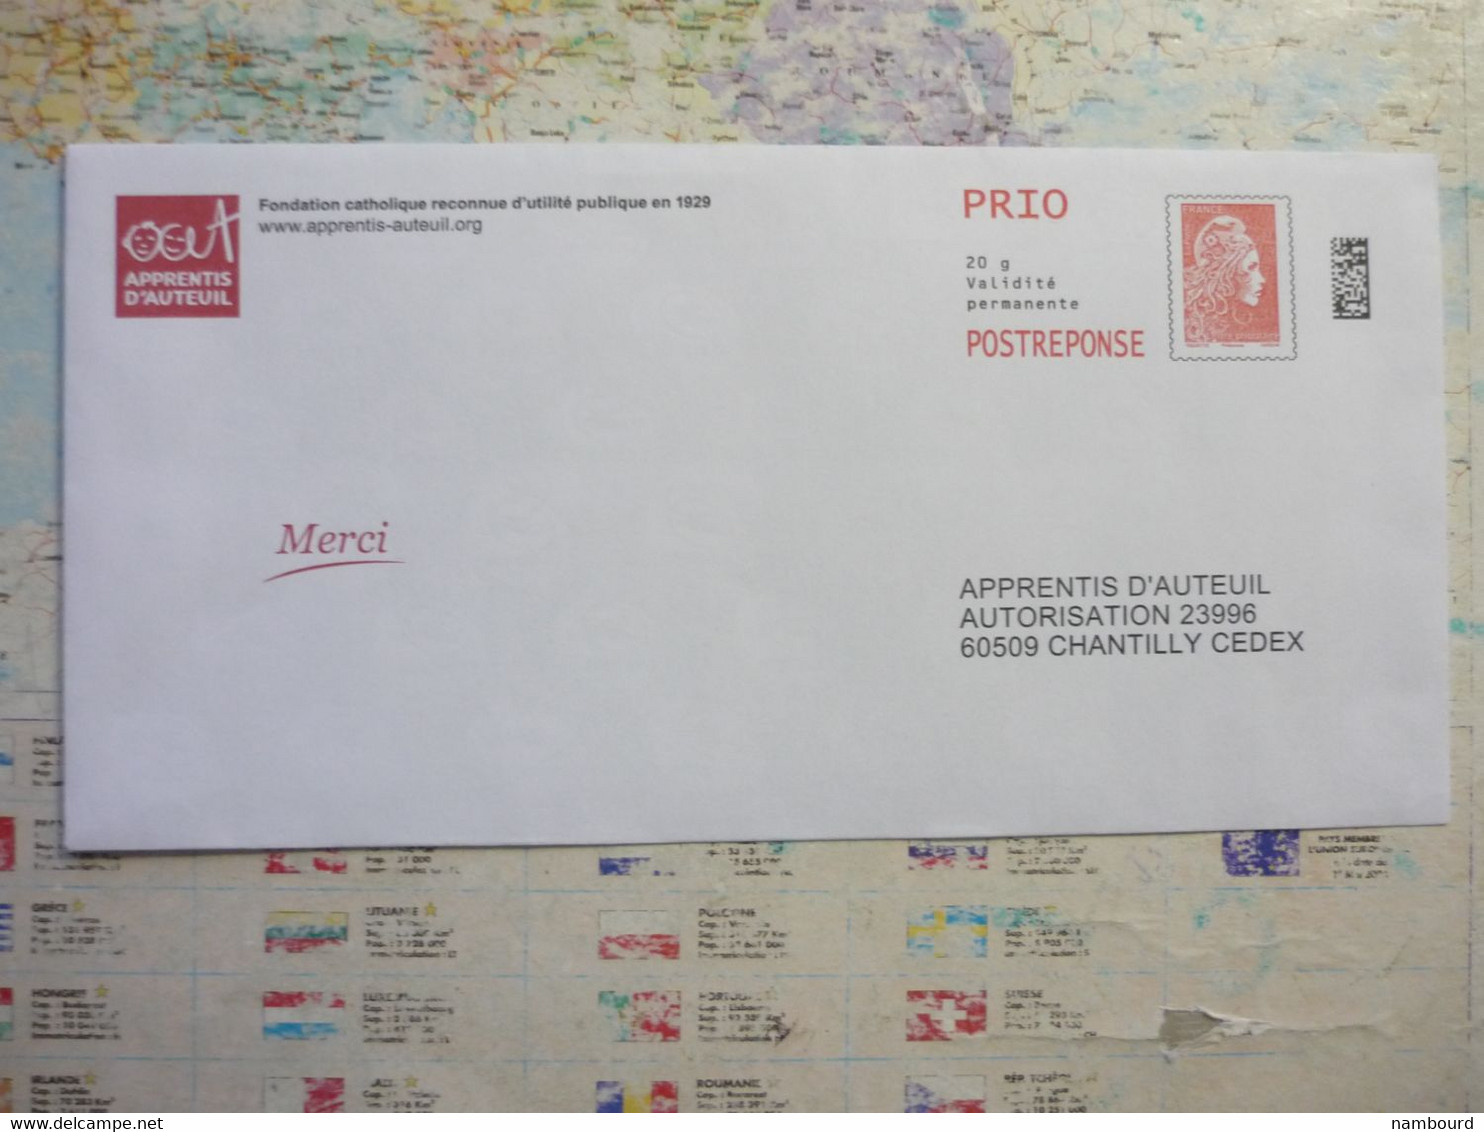 2 Postreponse Prio Apprentis D'Auteuil N°318661 Et 371360 - Prêts-à-poster: Réponse /Beaujard